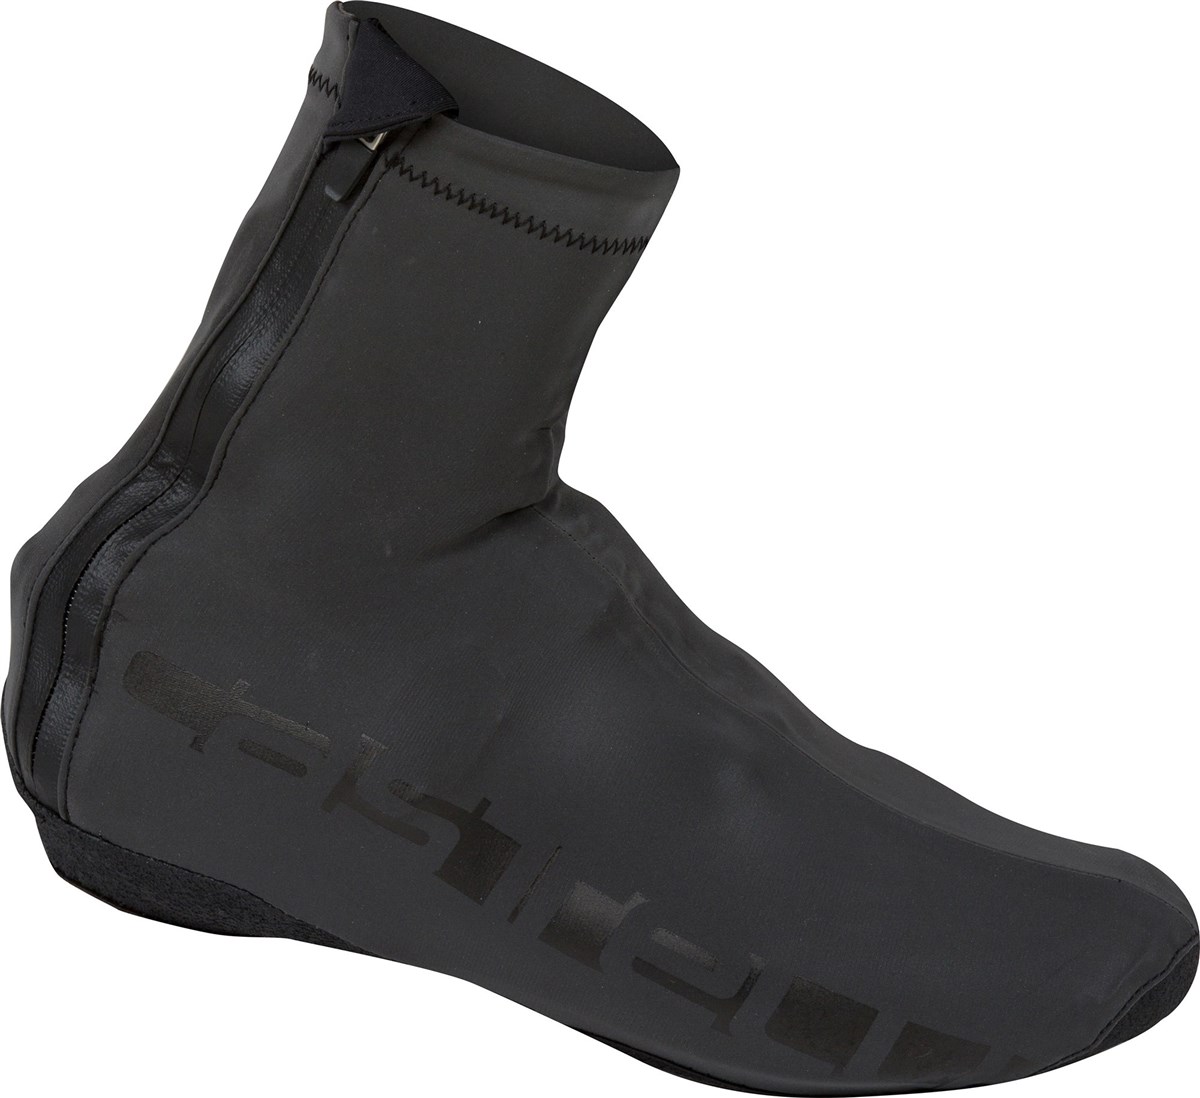 Castelli Reflex Shoecovers AW16